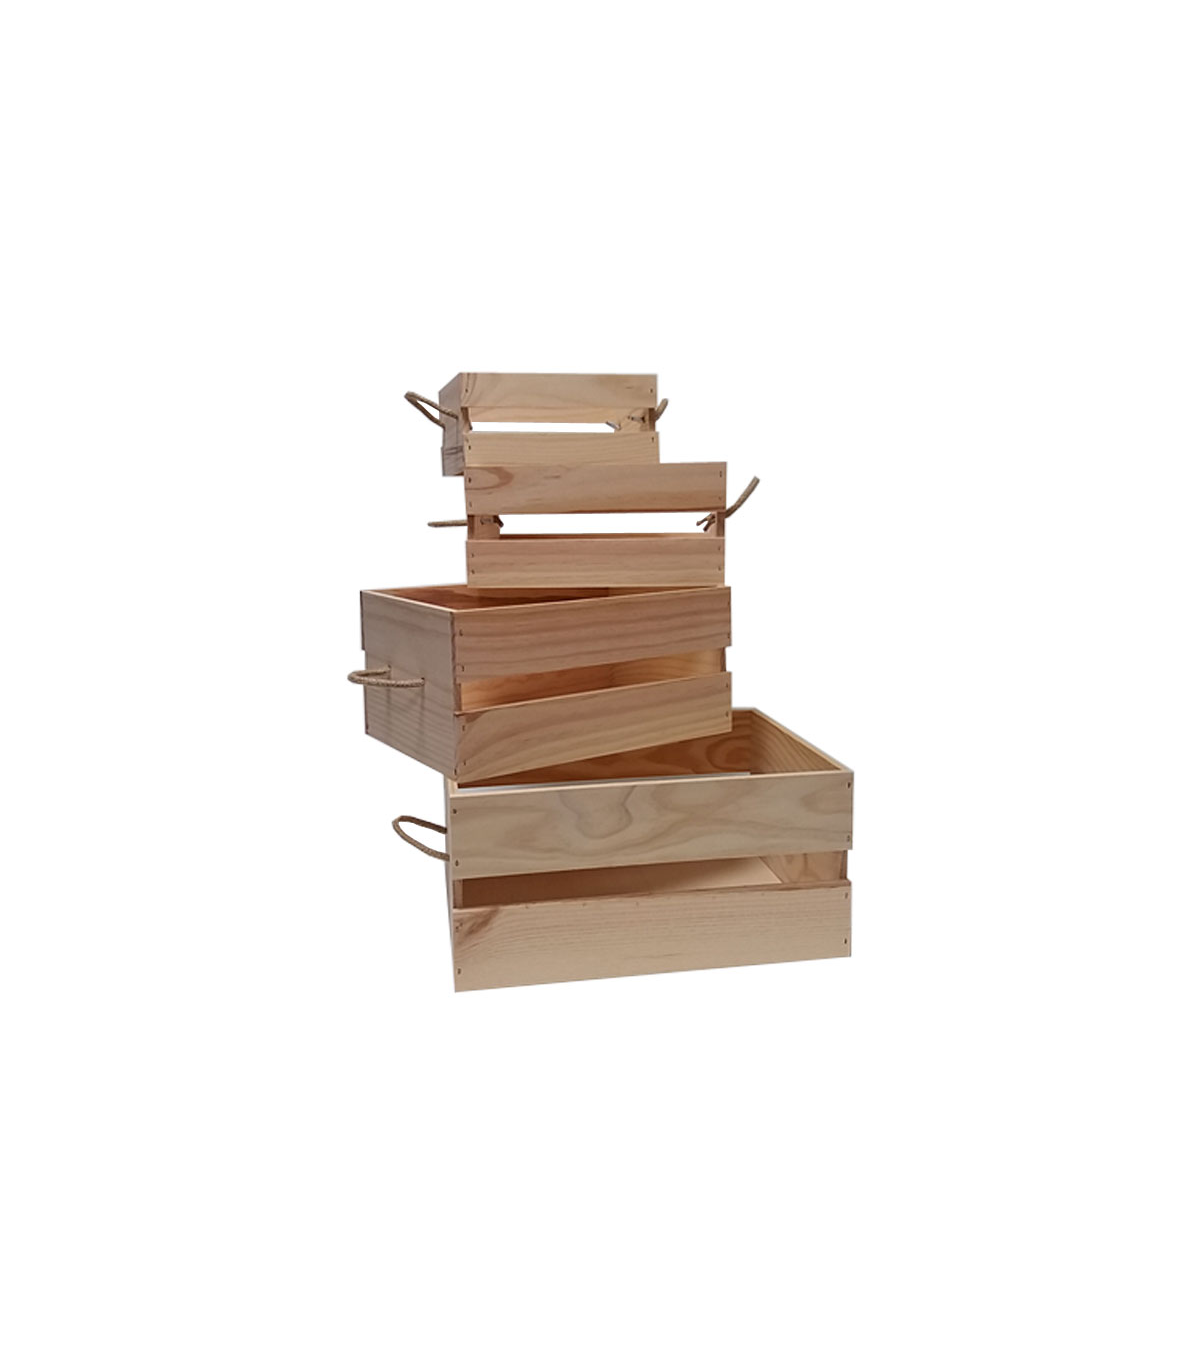 Comprar cajas de madera para el almacenaje o para la decoración